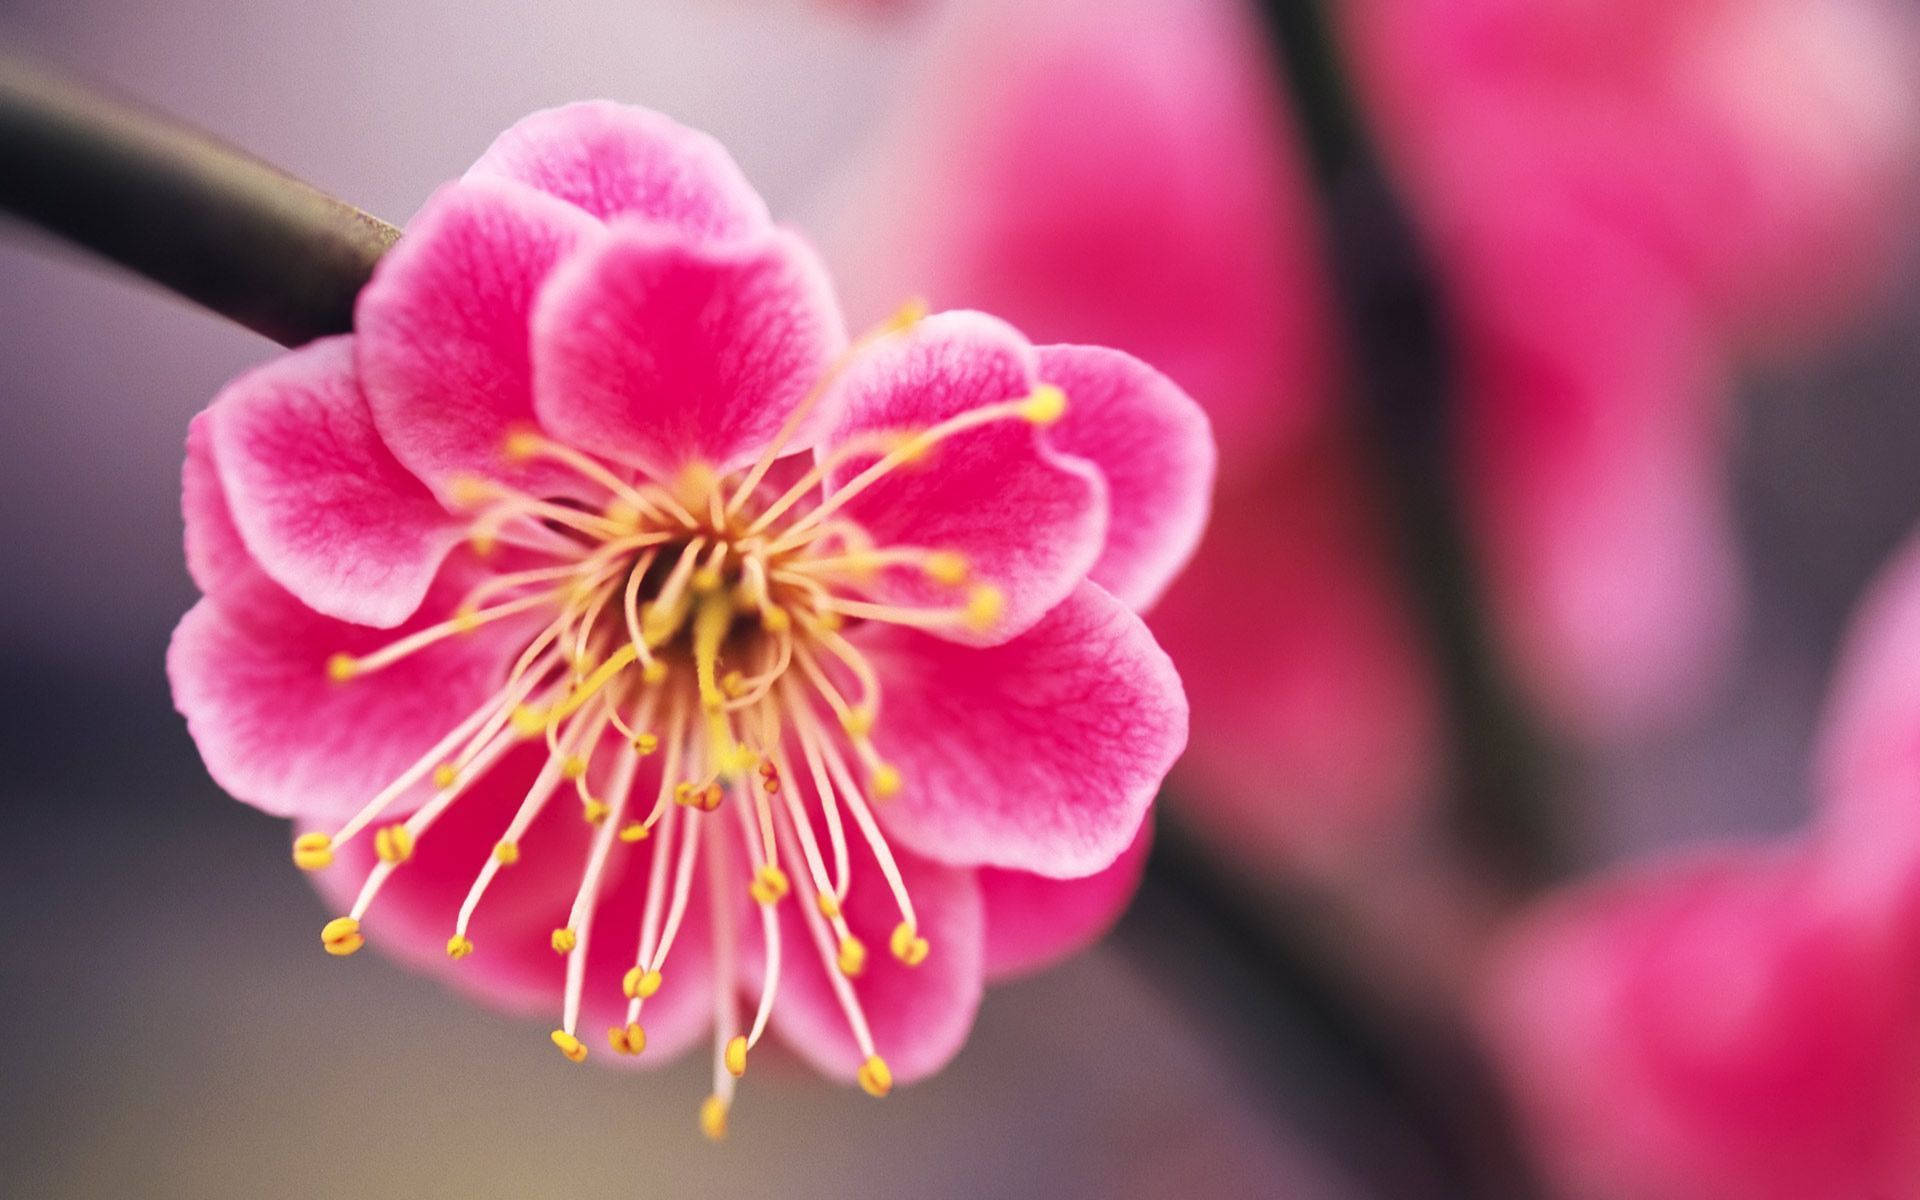 Download Tilt-shift Blur Of Pink Plum Blossom Flowers Wallpaper | Wallpapers .com